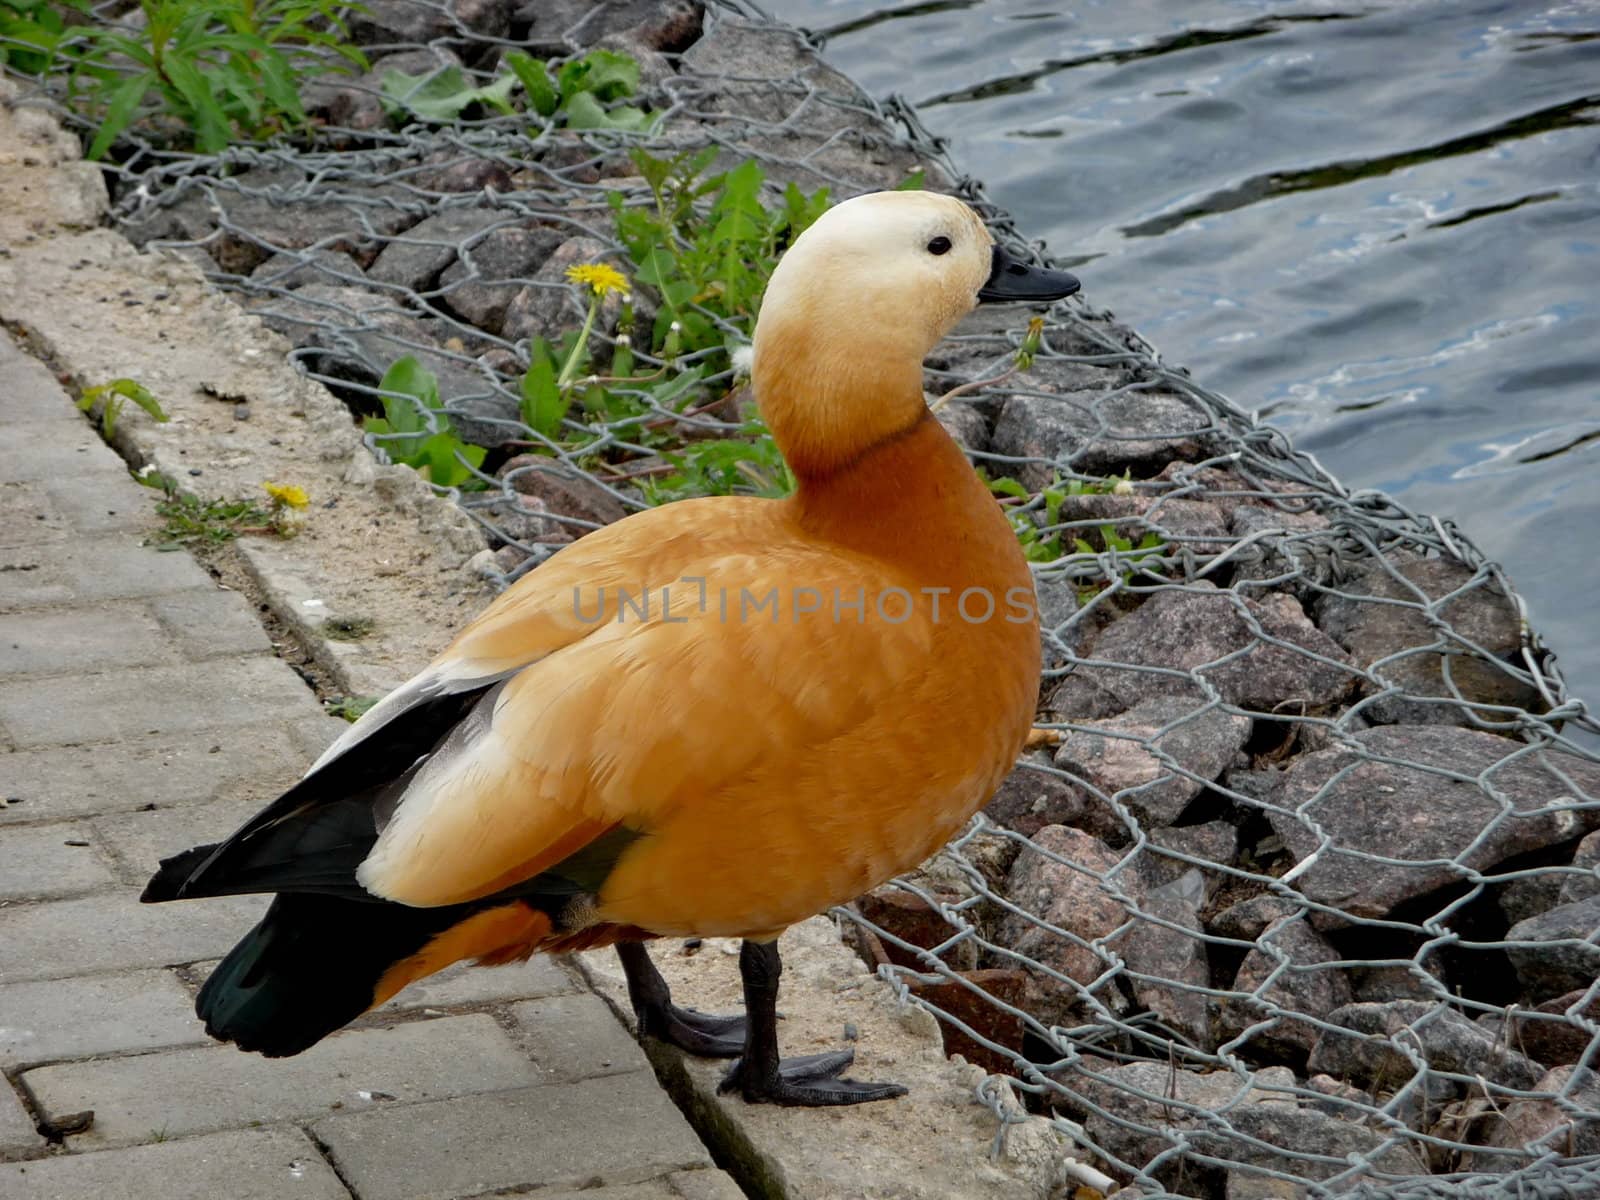 Orange duck near water by tomatto